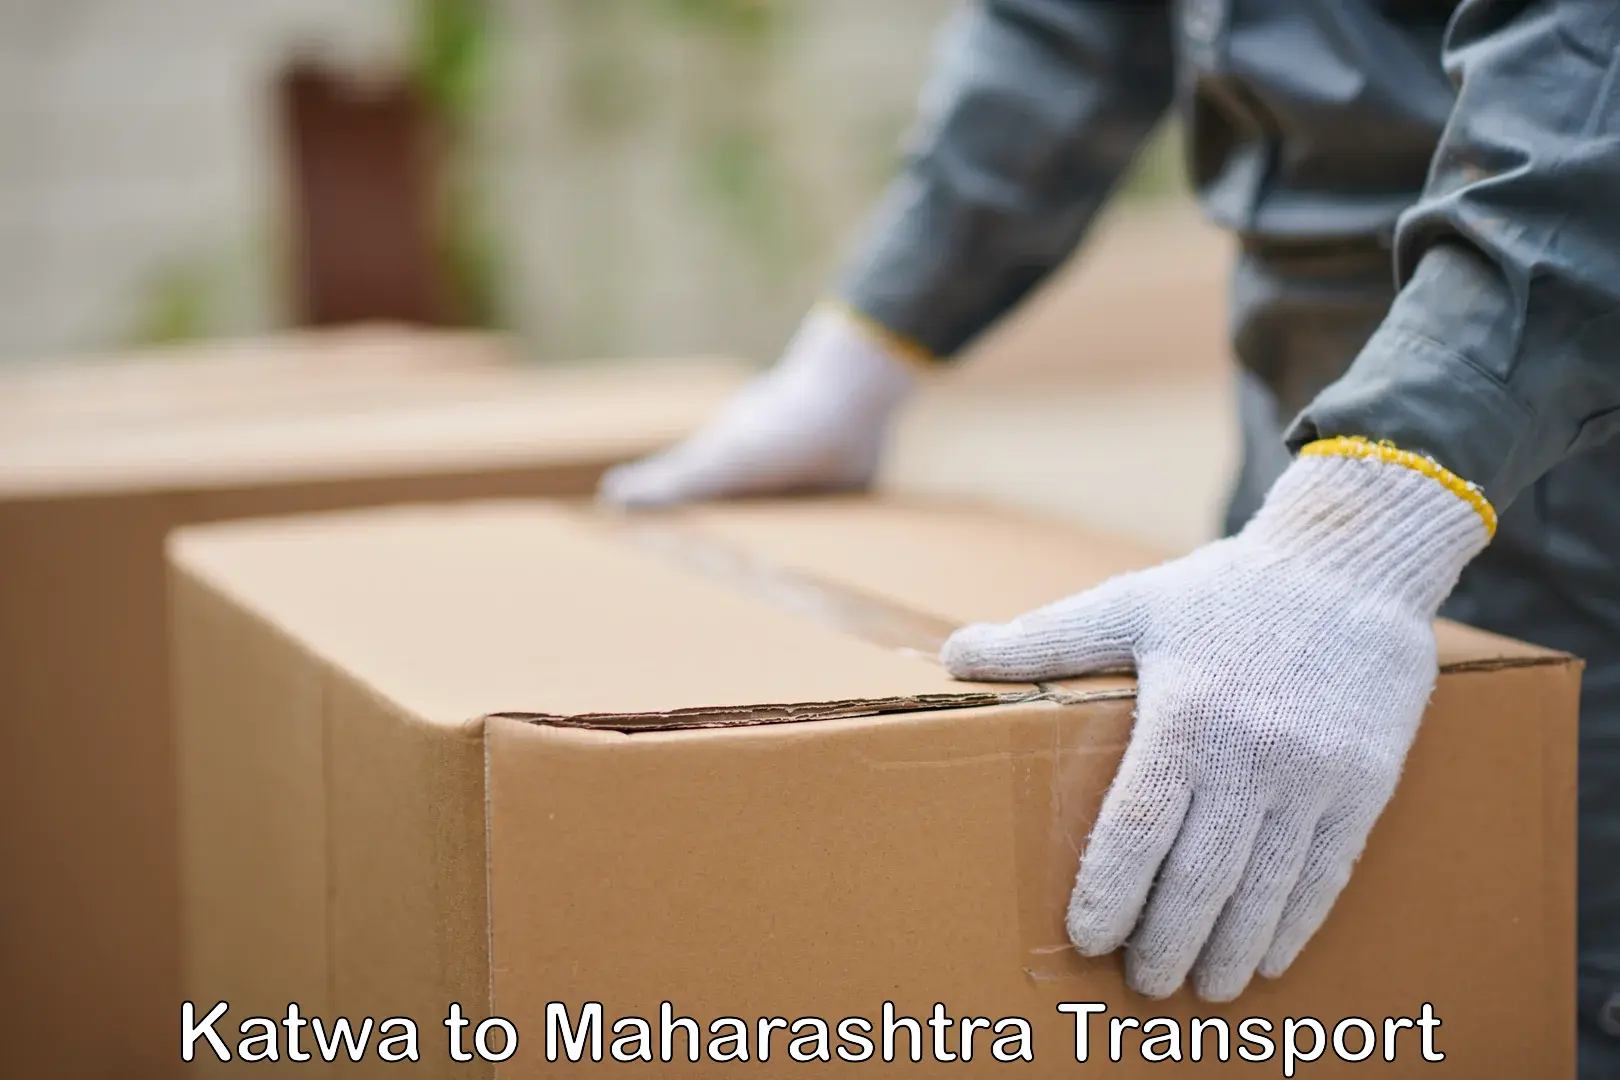 Furniture transport service Katwa to Maharashtra